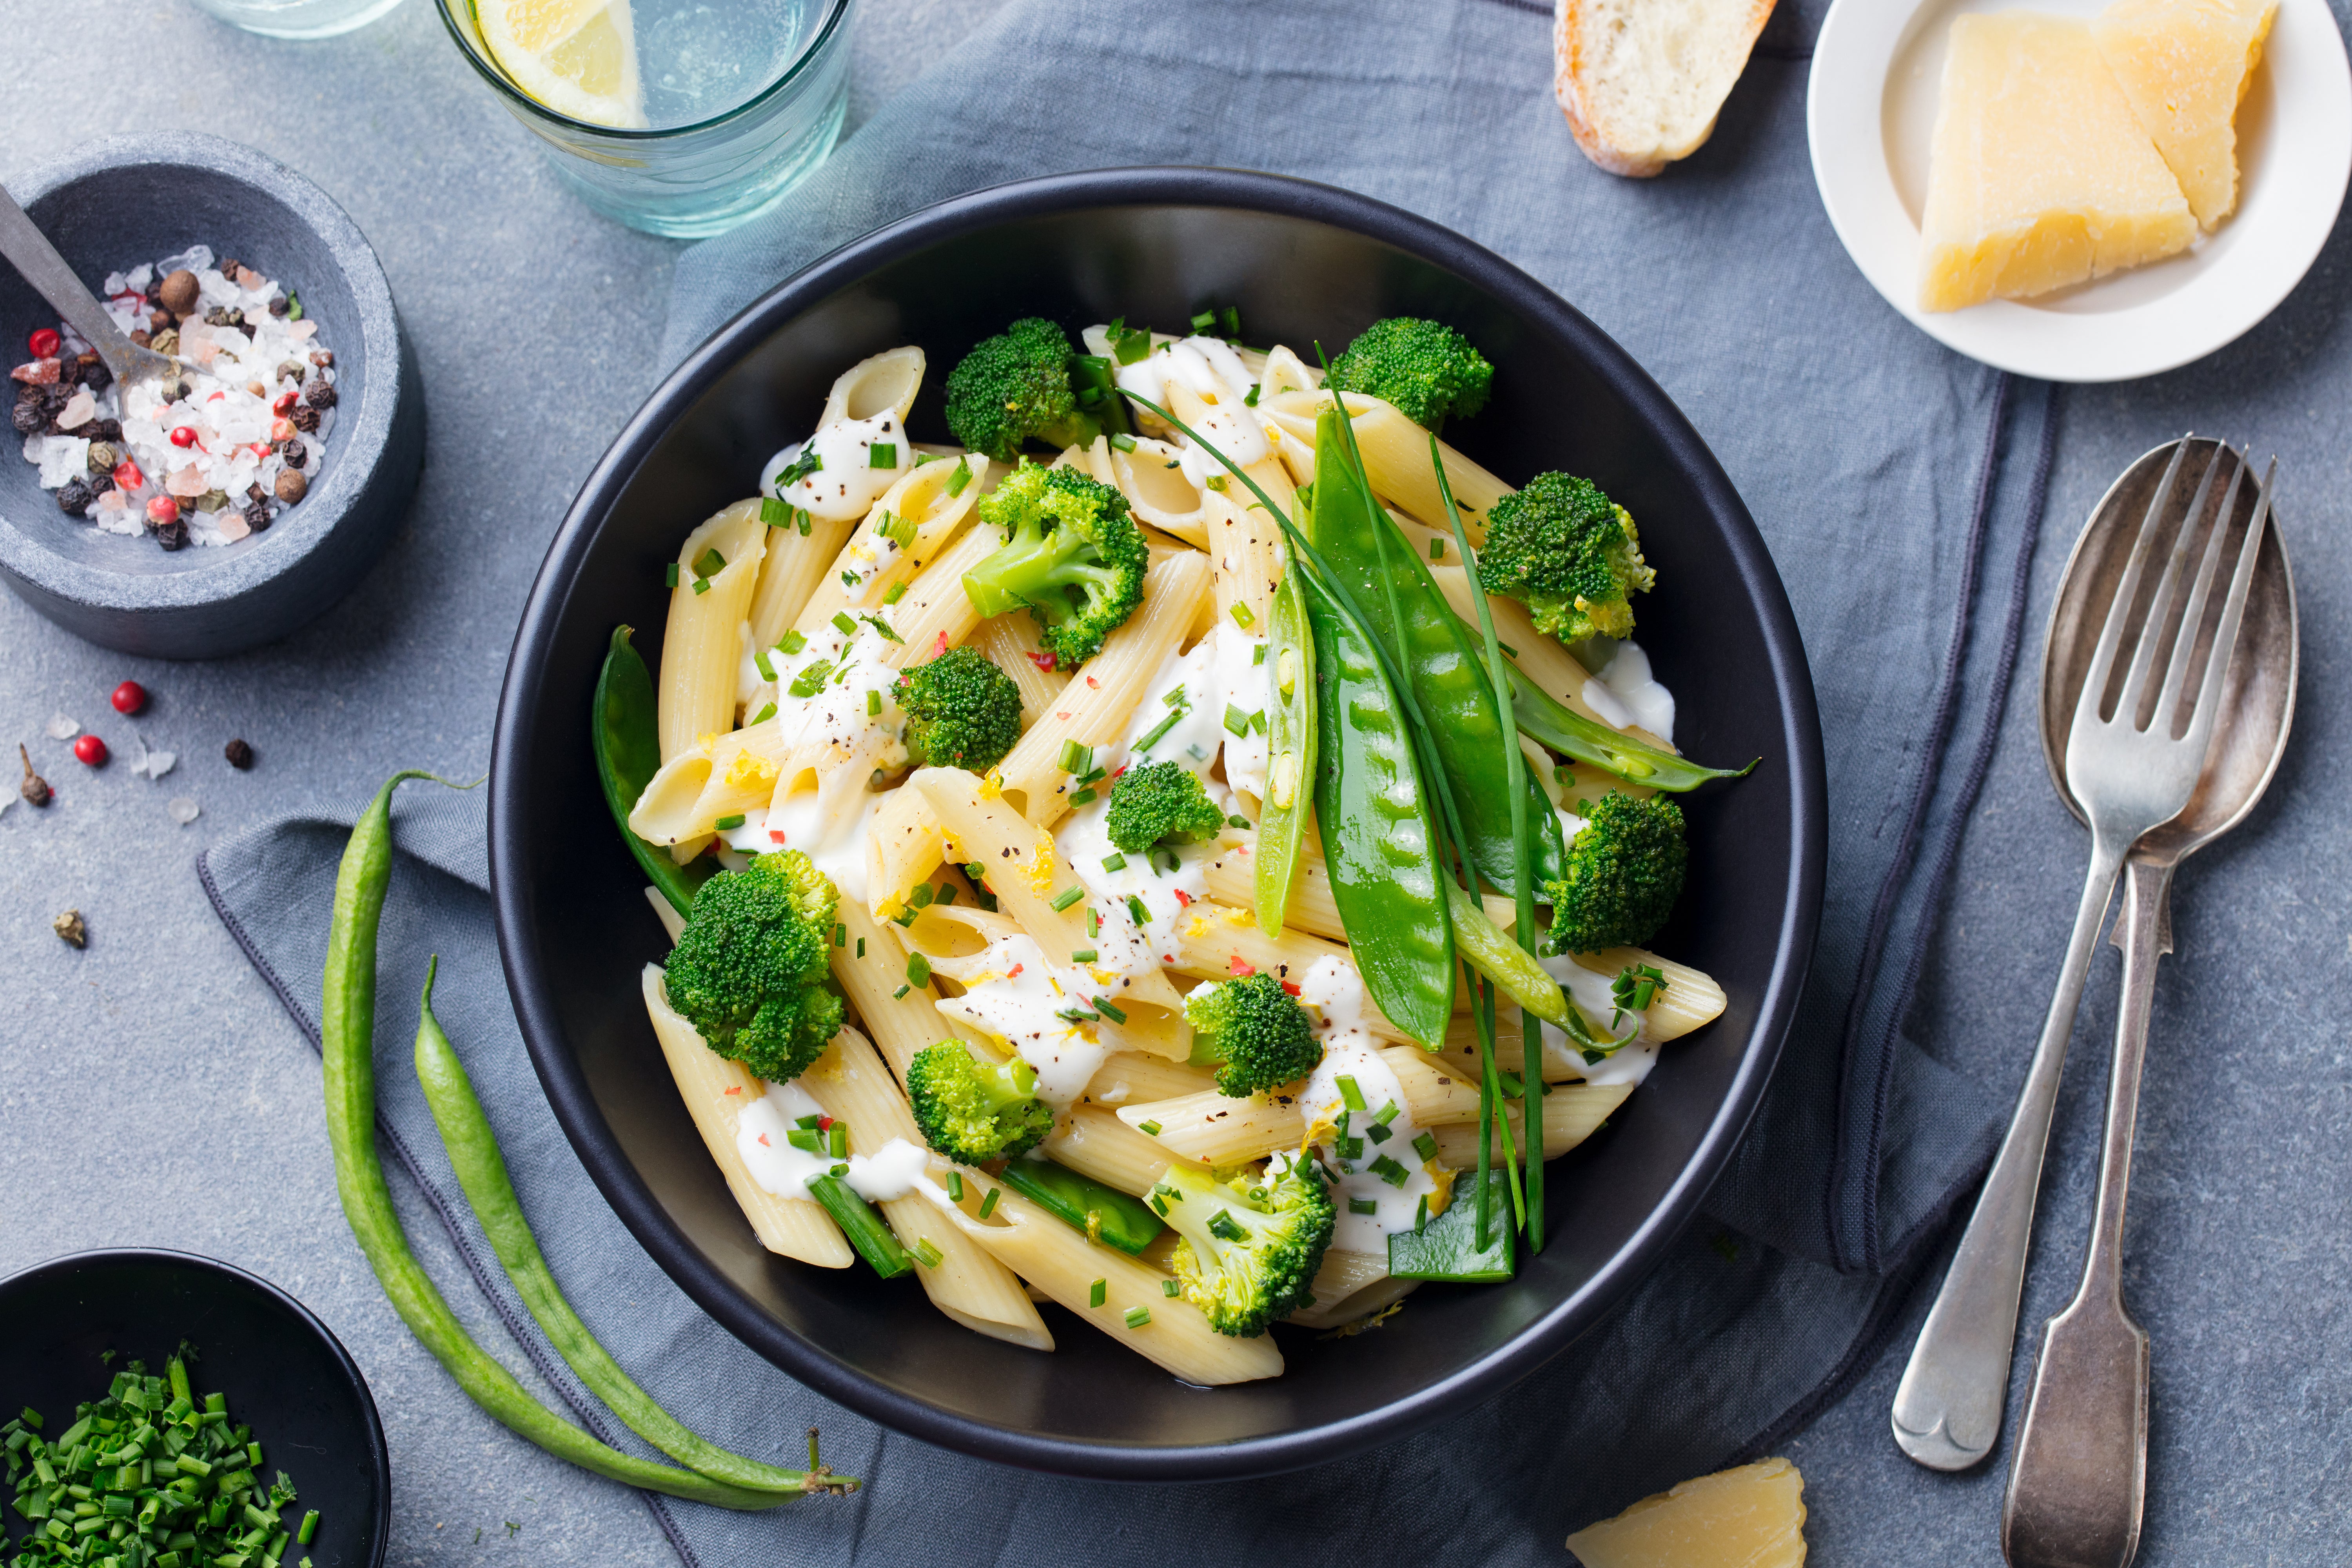 Las verduras le aportan nutrientes a tu pasta.